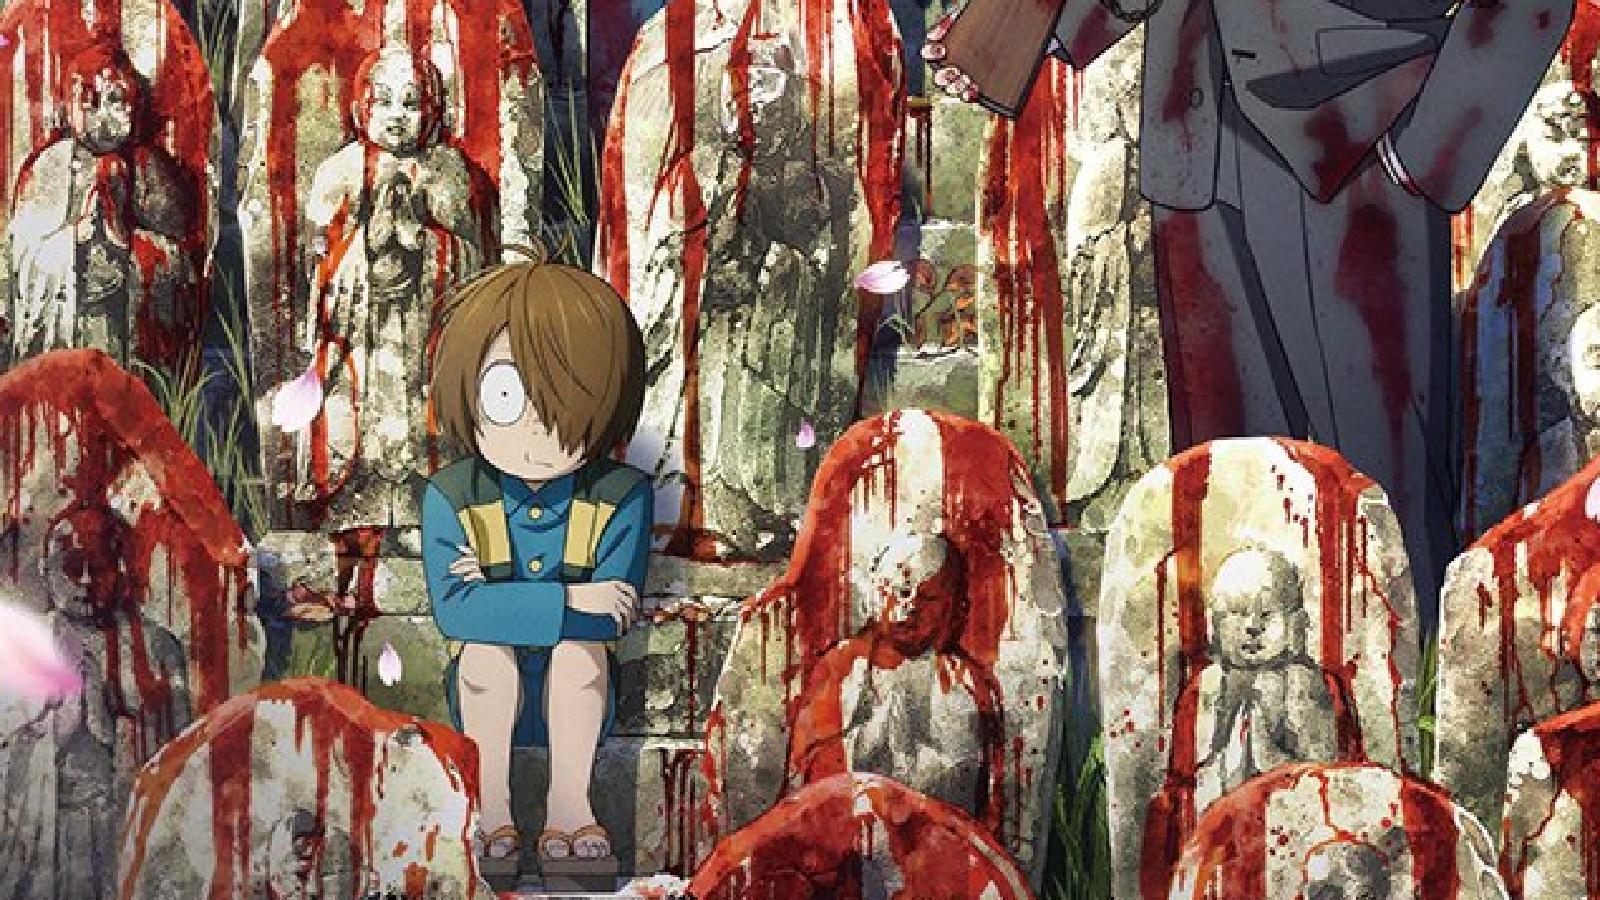 New Akuma Kun Anime Series' Trailer Reveals 3 More Cast, November